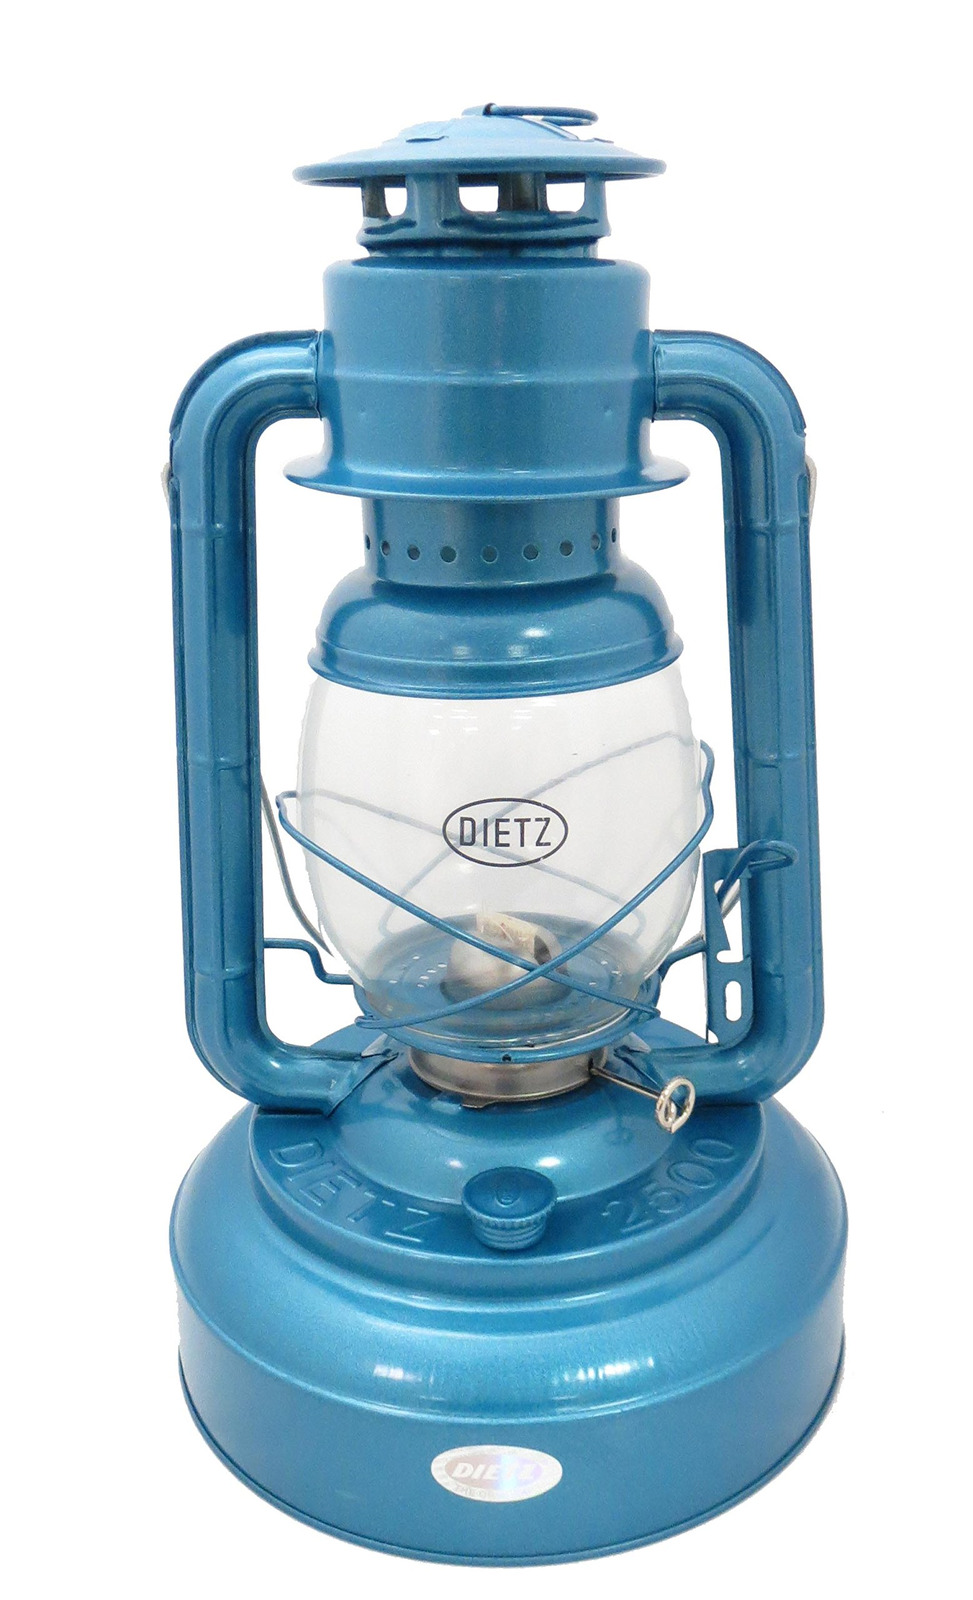 Dietz #2500 Jupiter Oil Lantern Blue